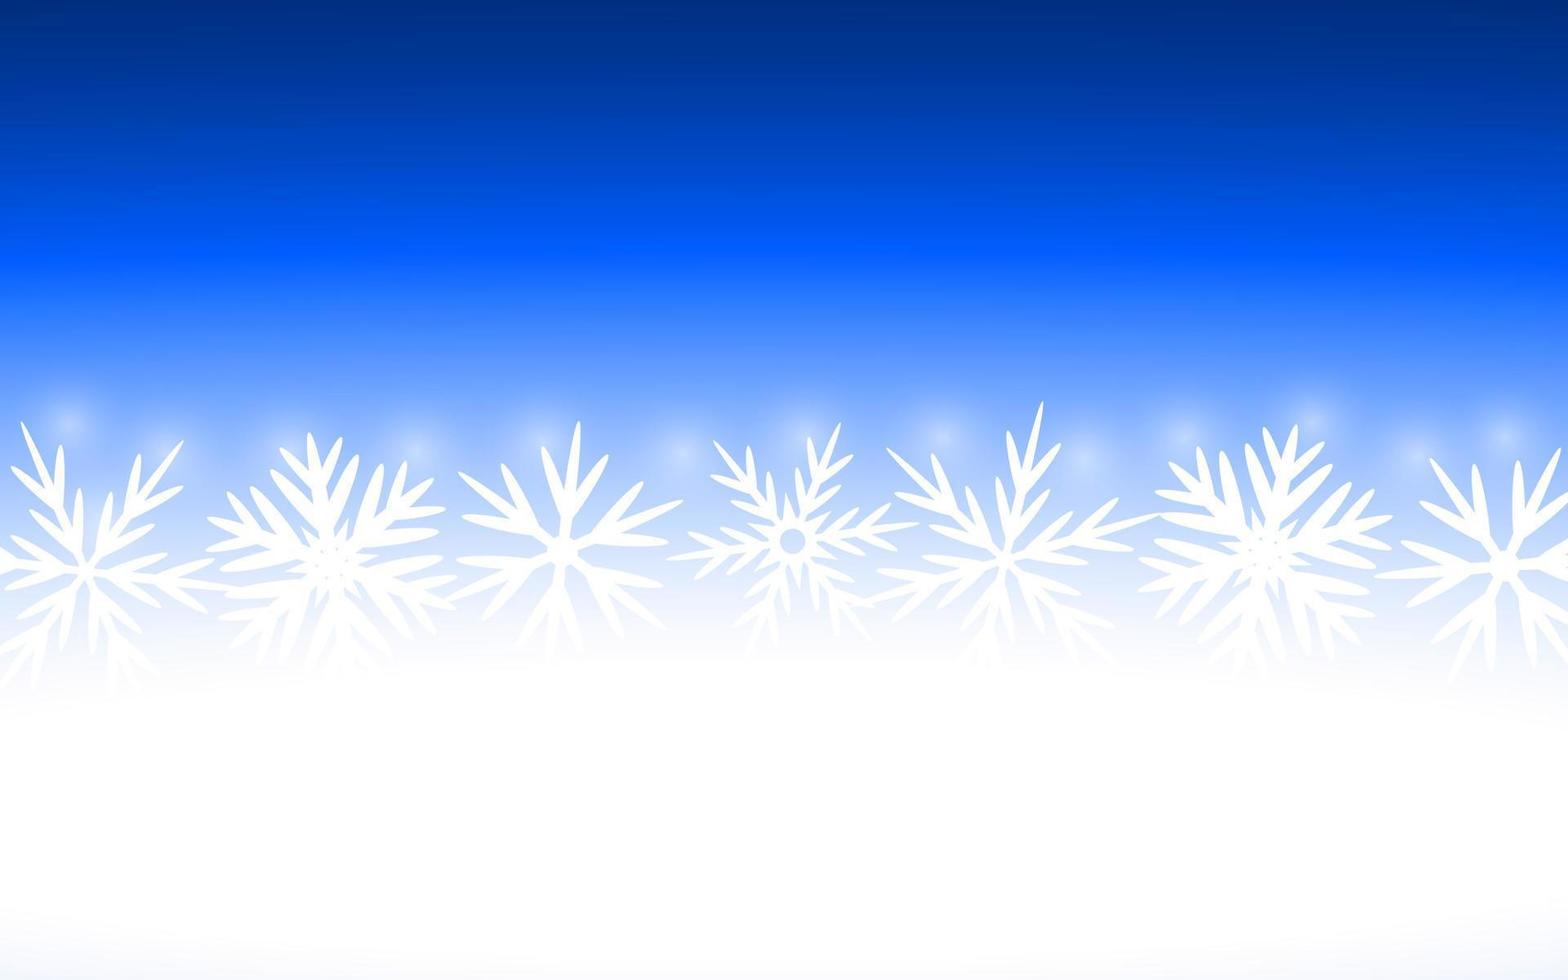 jul blå bakgrund med snöflingor vektor